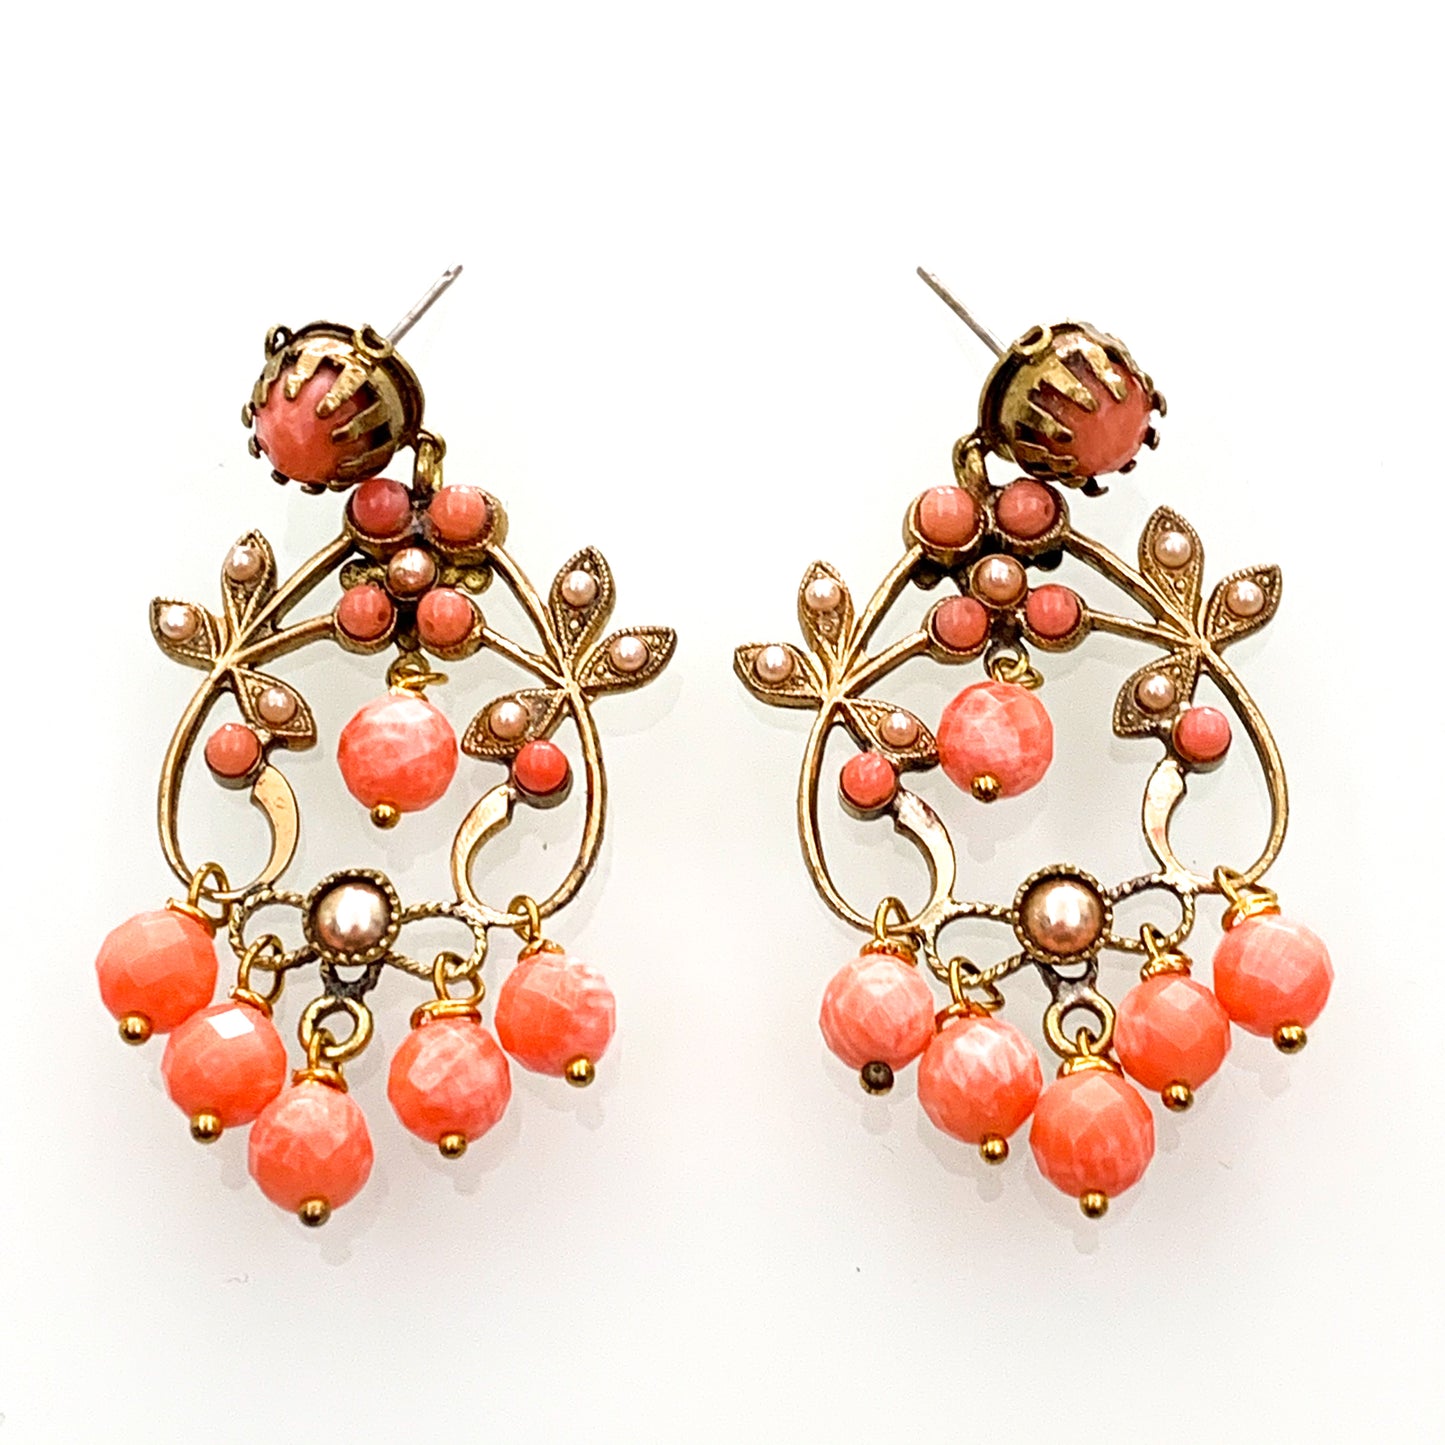 Orecchini pendenti in bijoux con corallo rosa e piccole perline.  Dimensione 5 cm di lunghezza x 2,5 cm di larghezza.  Chiusura con farfalline.  Spedizione gratuita con confezione regalo.